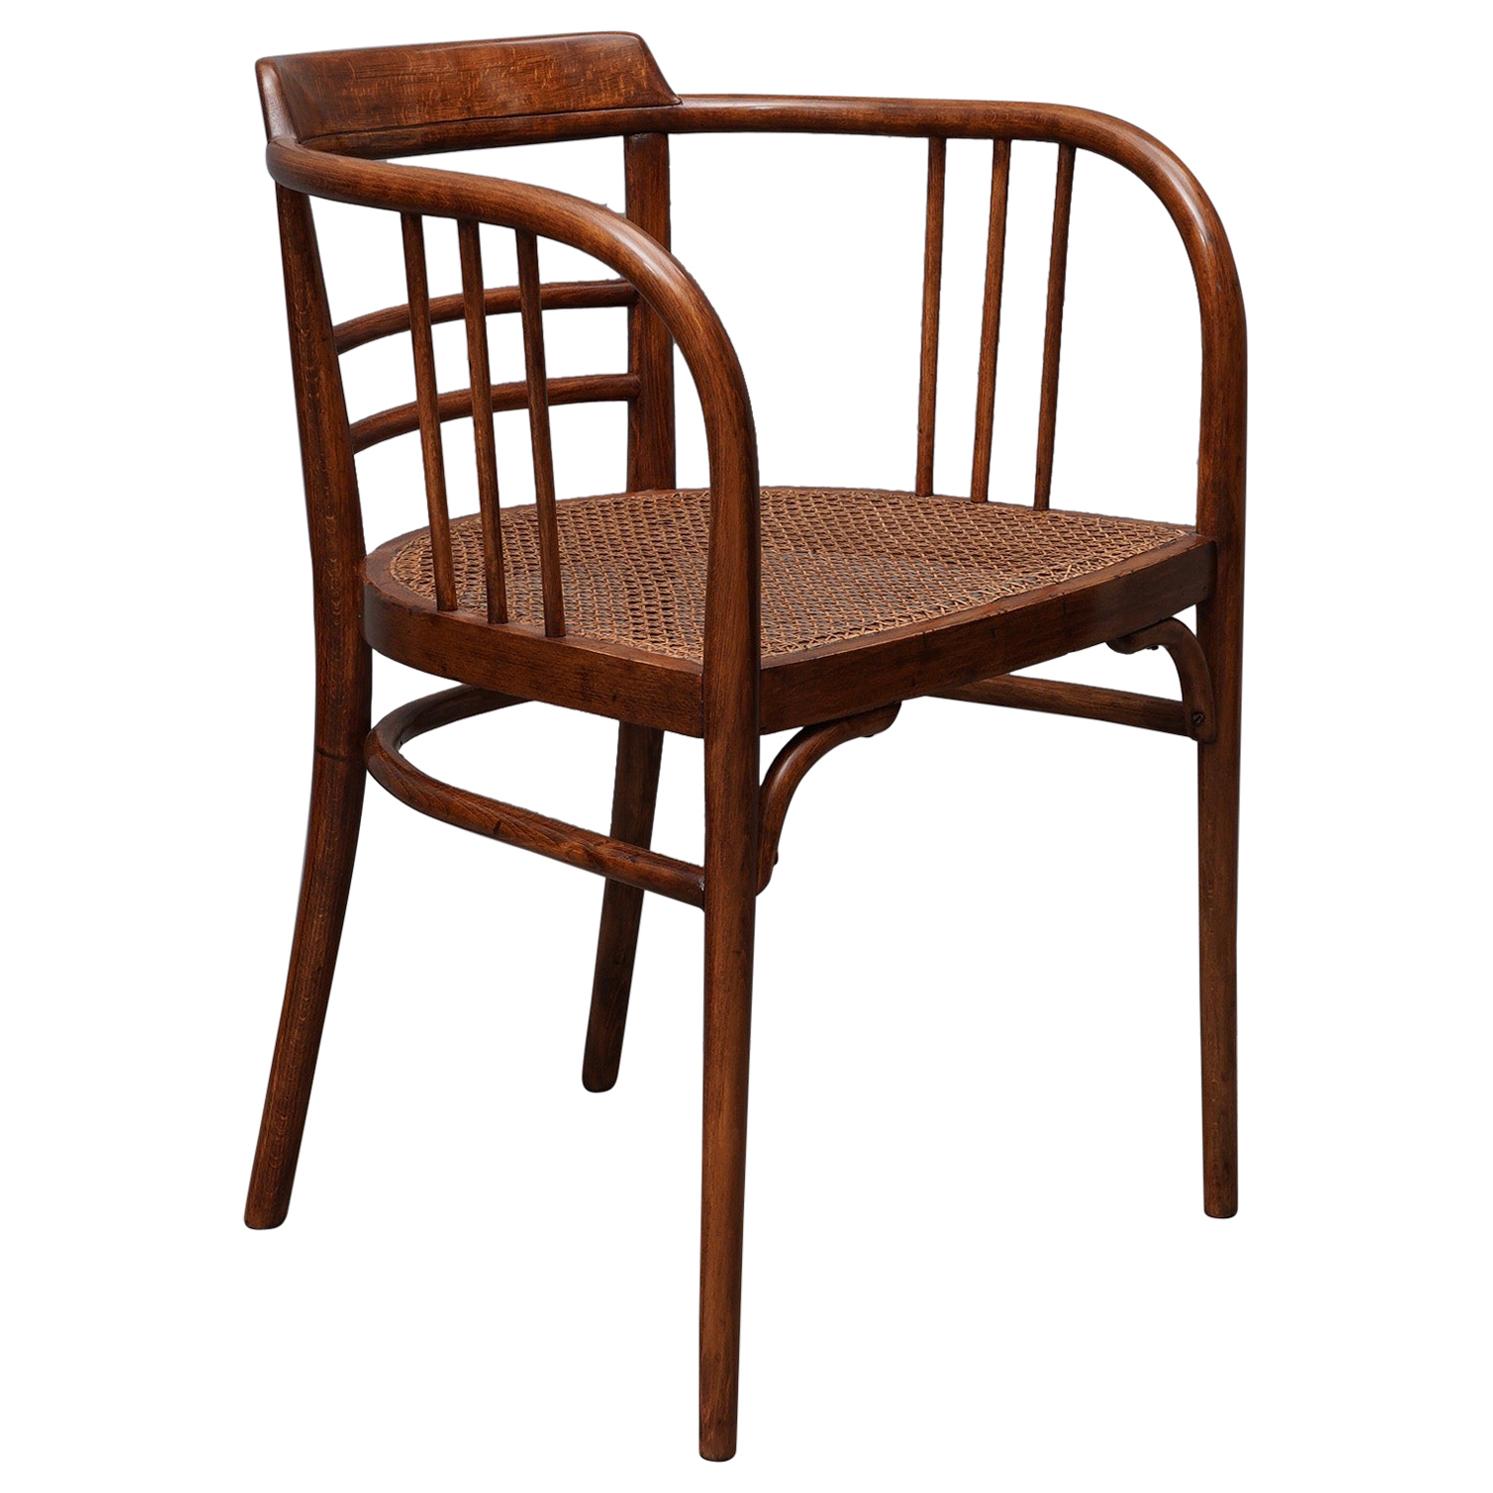 Thonet Curved Beechwood Austrian Art Nouveau Chair, 1910